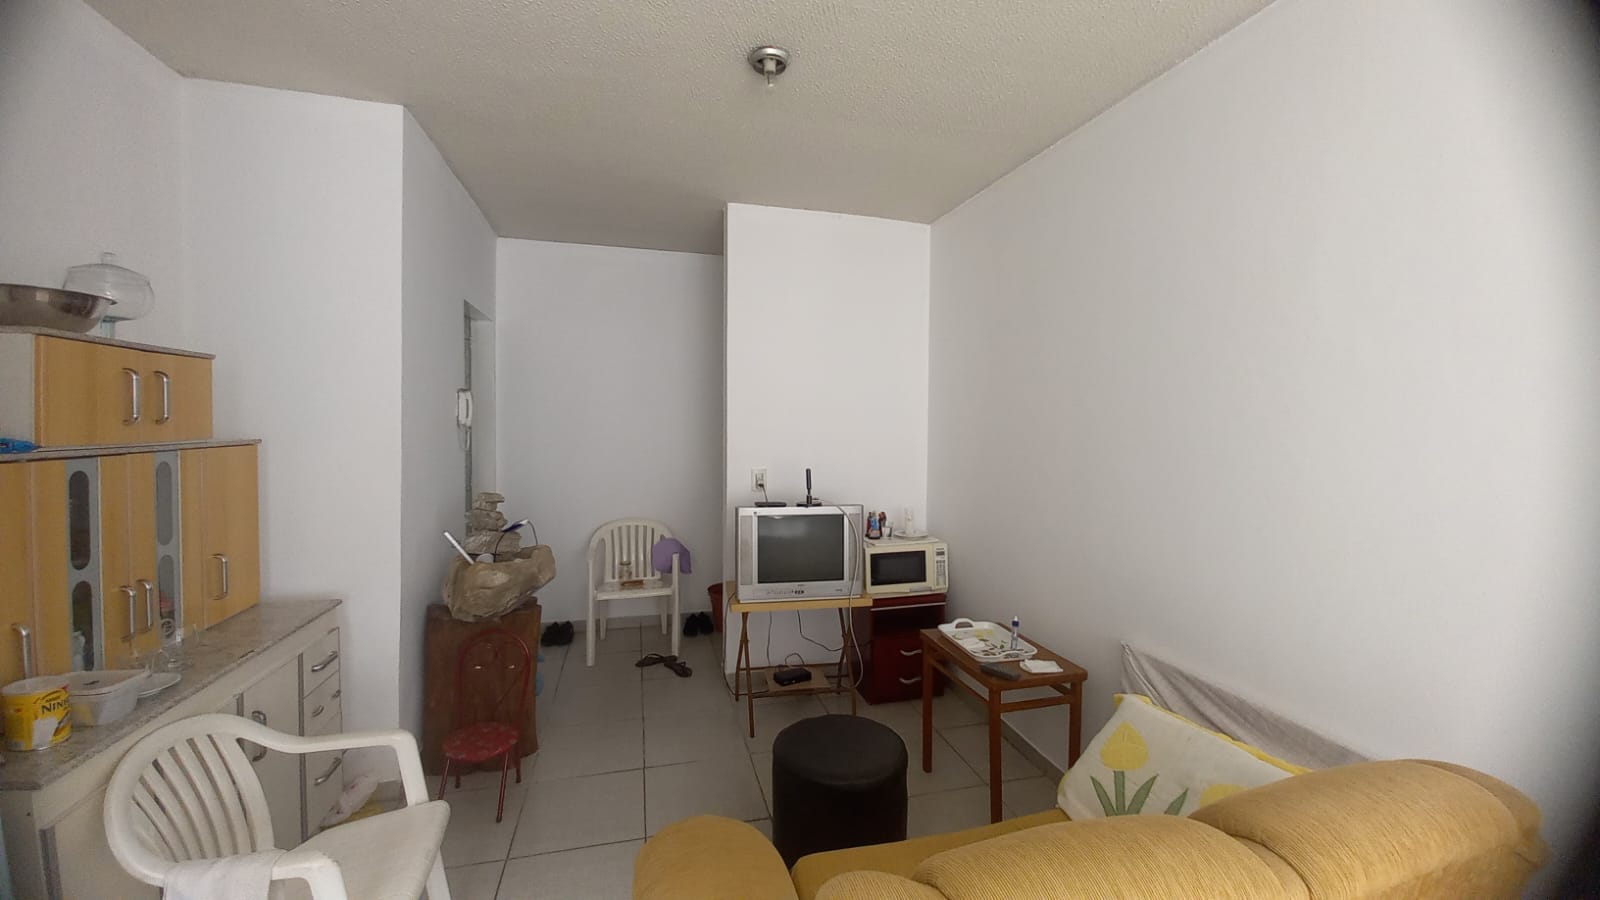 Apartamento em Eldorado, Contagem/MG de 50m² 2 quartos à venda por R$ 119.000,00